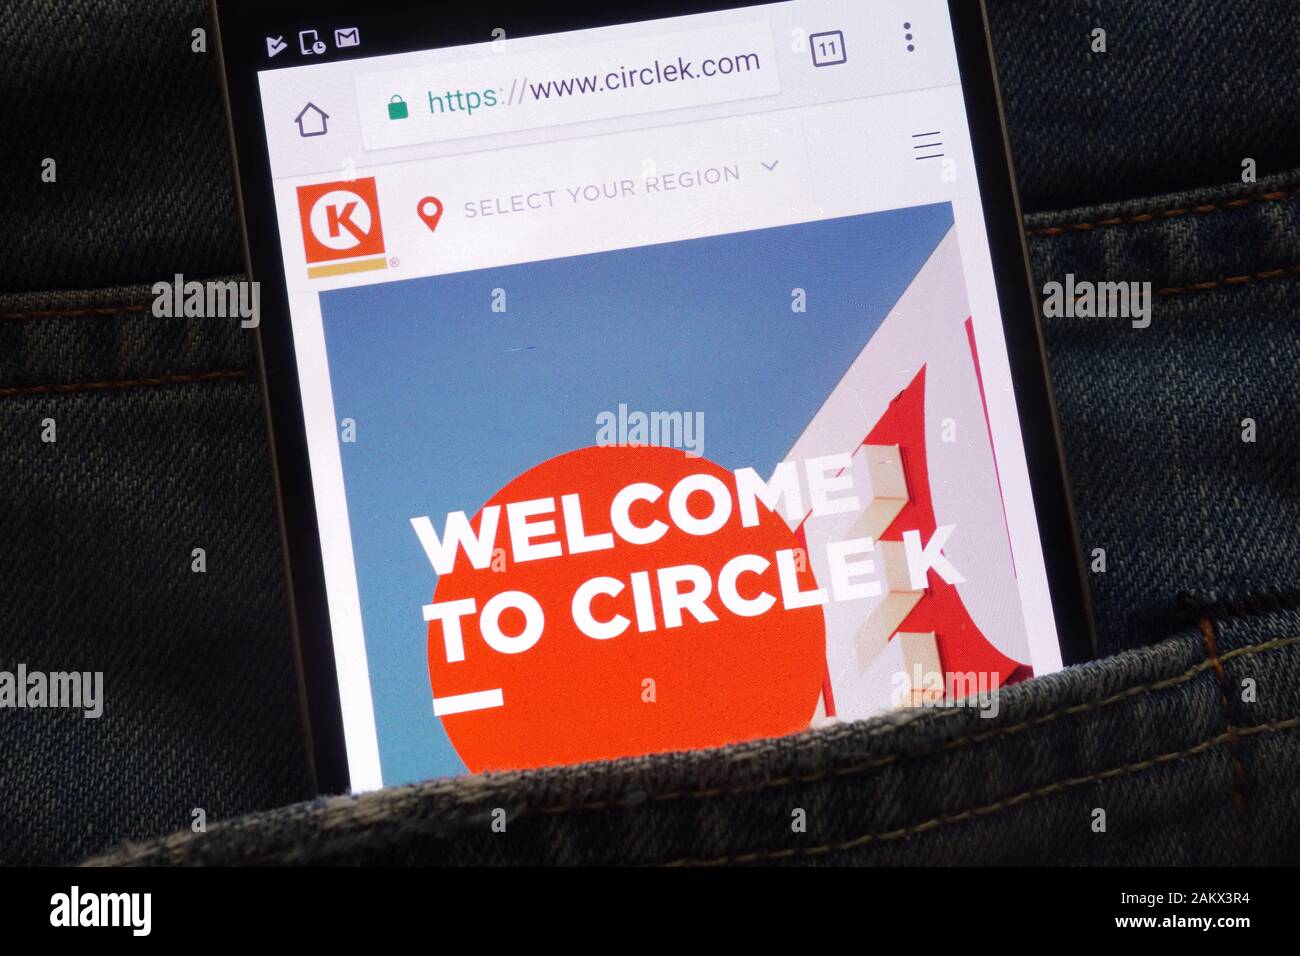 Site web de Circle K affiche sur smartphone caché dans la poche de jeans Banque D'Images